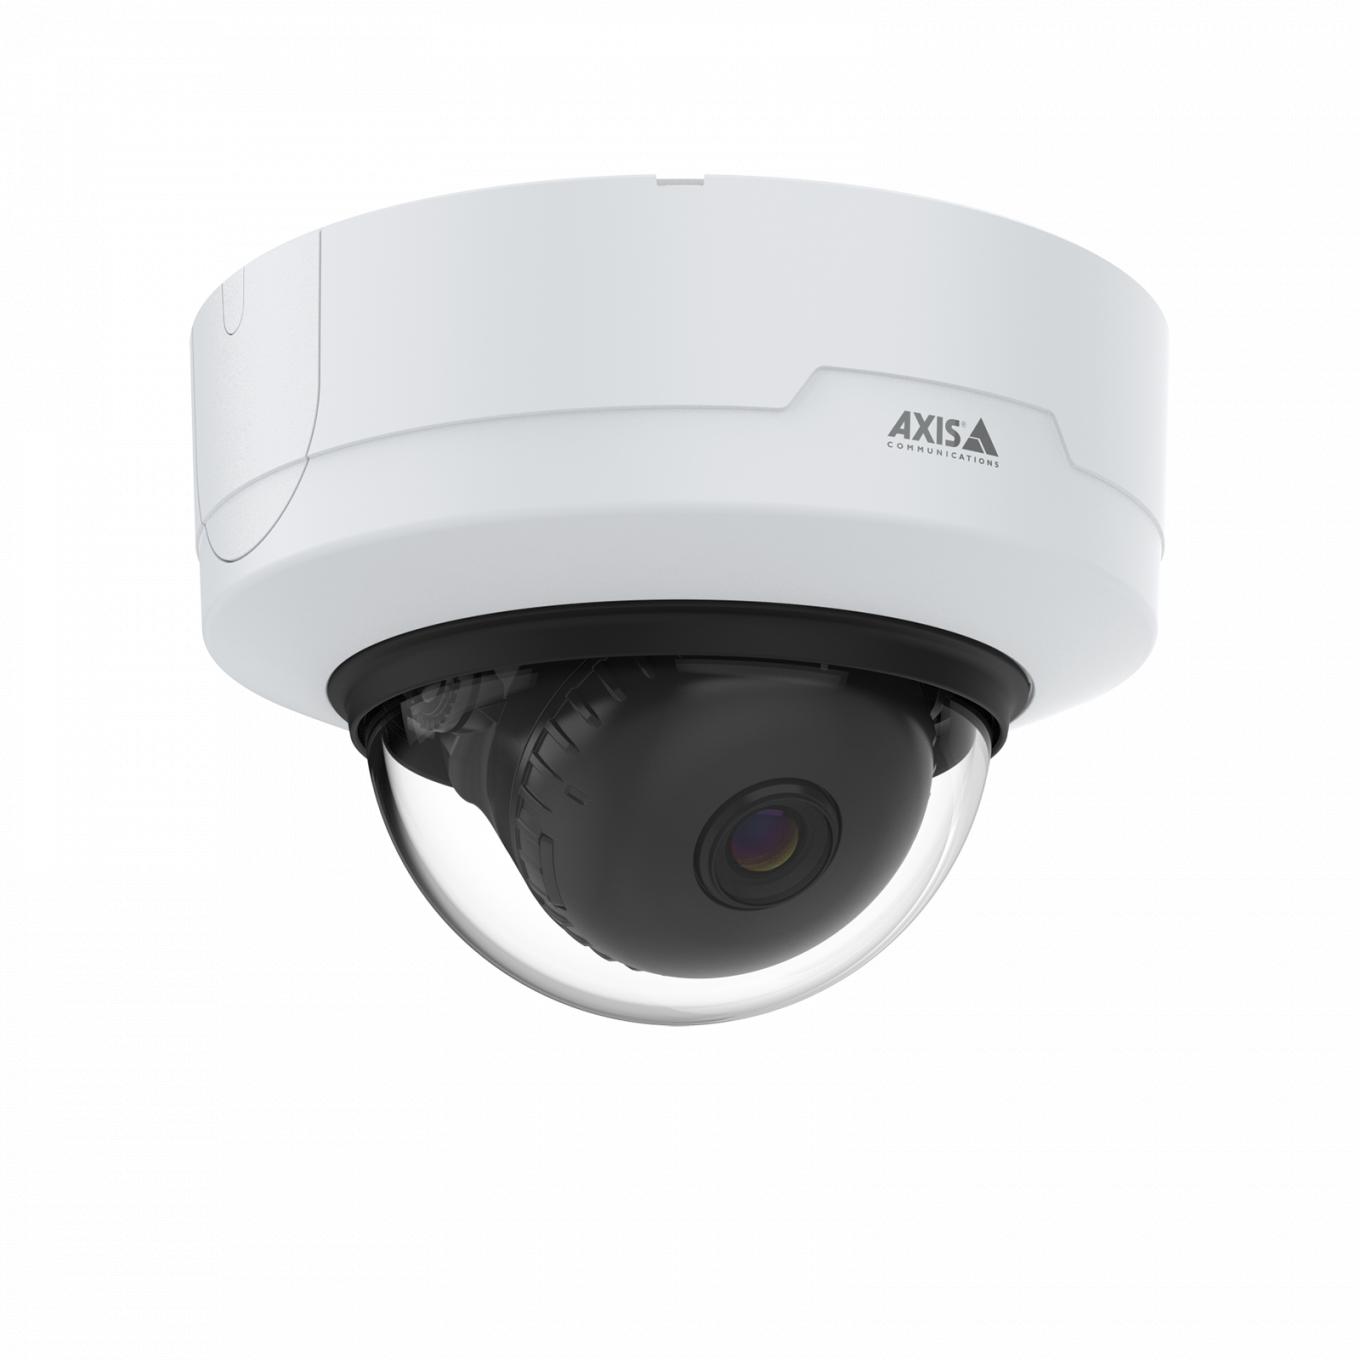 AXIS P3265-V Dome Camera montada no teto vista pela direita